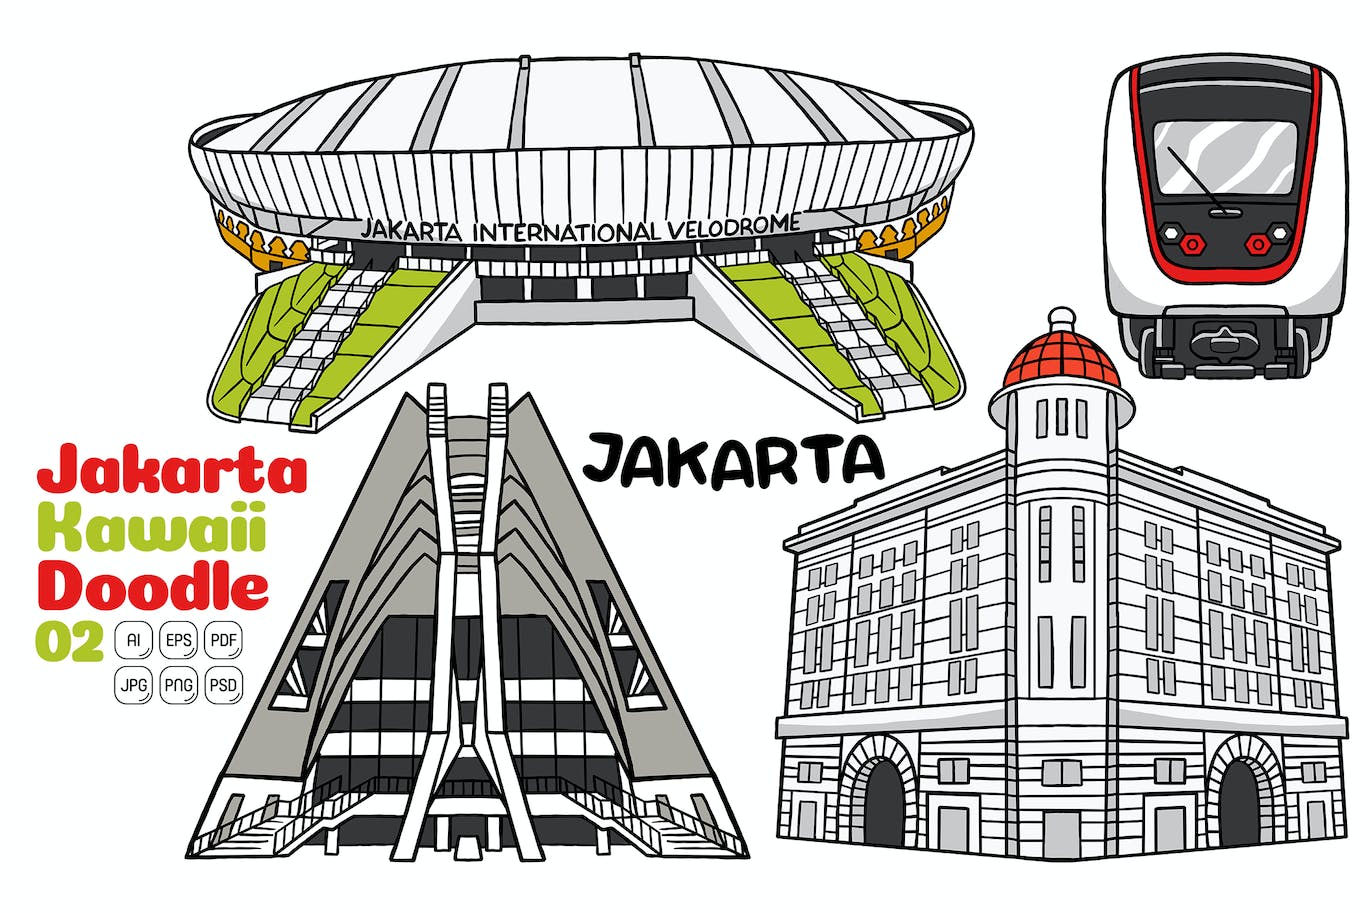 雅加达涂鸦艺术风格矢量插画 Jakarta Kawaii Doodle Vector Illustration #02-1